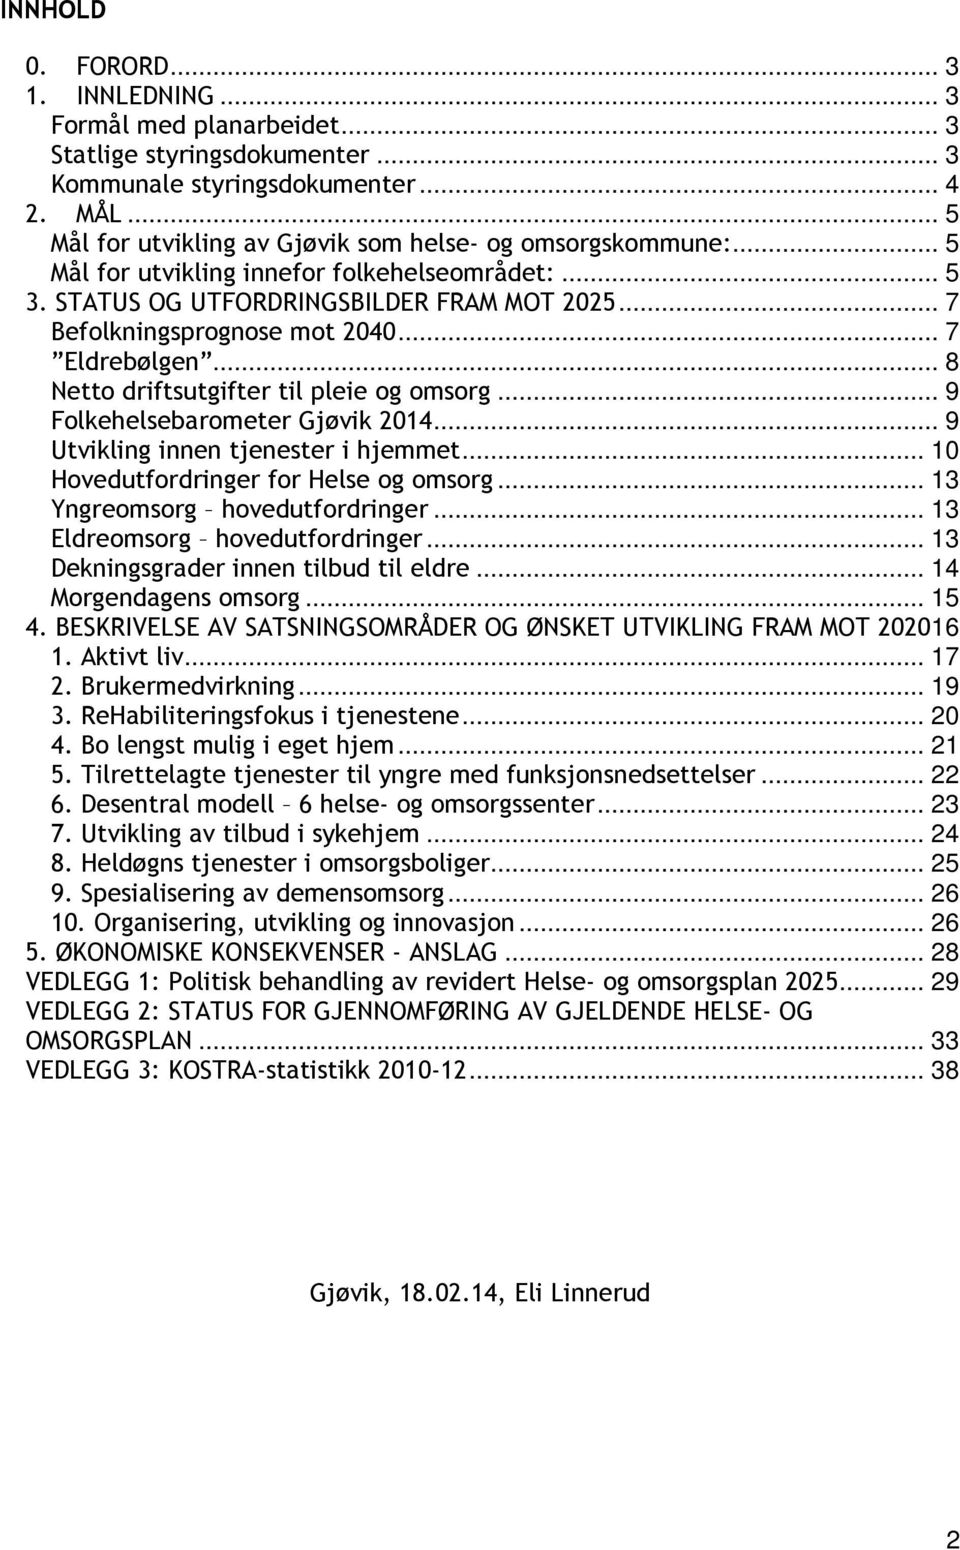 .. 7 Eldrebølgen... 8 Netto driftsutgifter til pleie og omsorg... 9 Folkehelsebarometer Gjøvik 2014... 9 Utvikling innen tjenester i hjemmet... 10 Hovedutfordringer for Helse og omsorg.